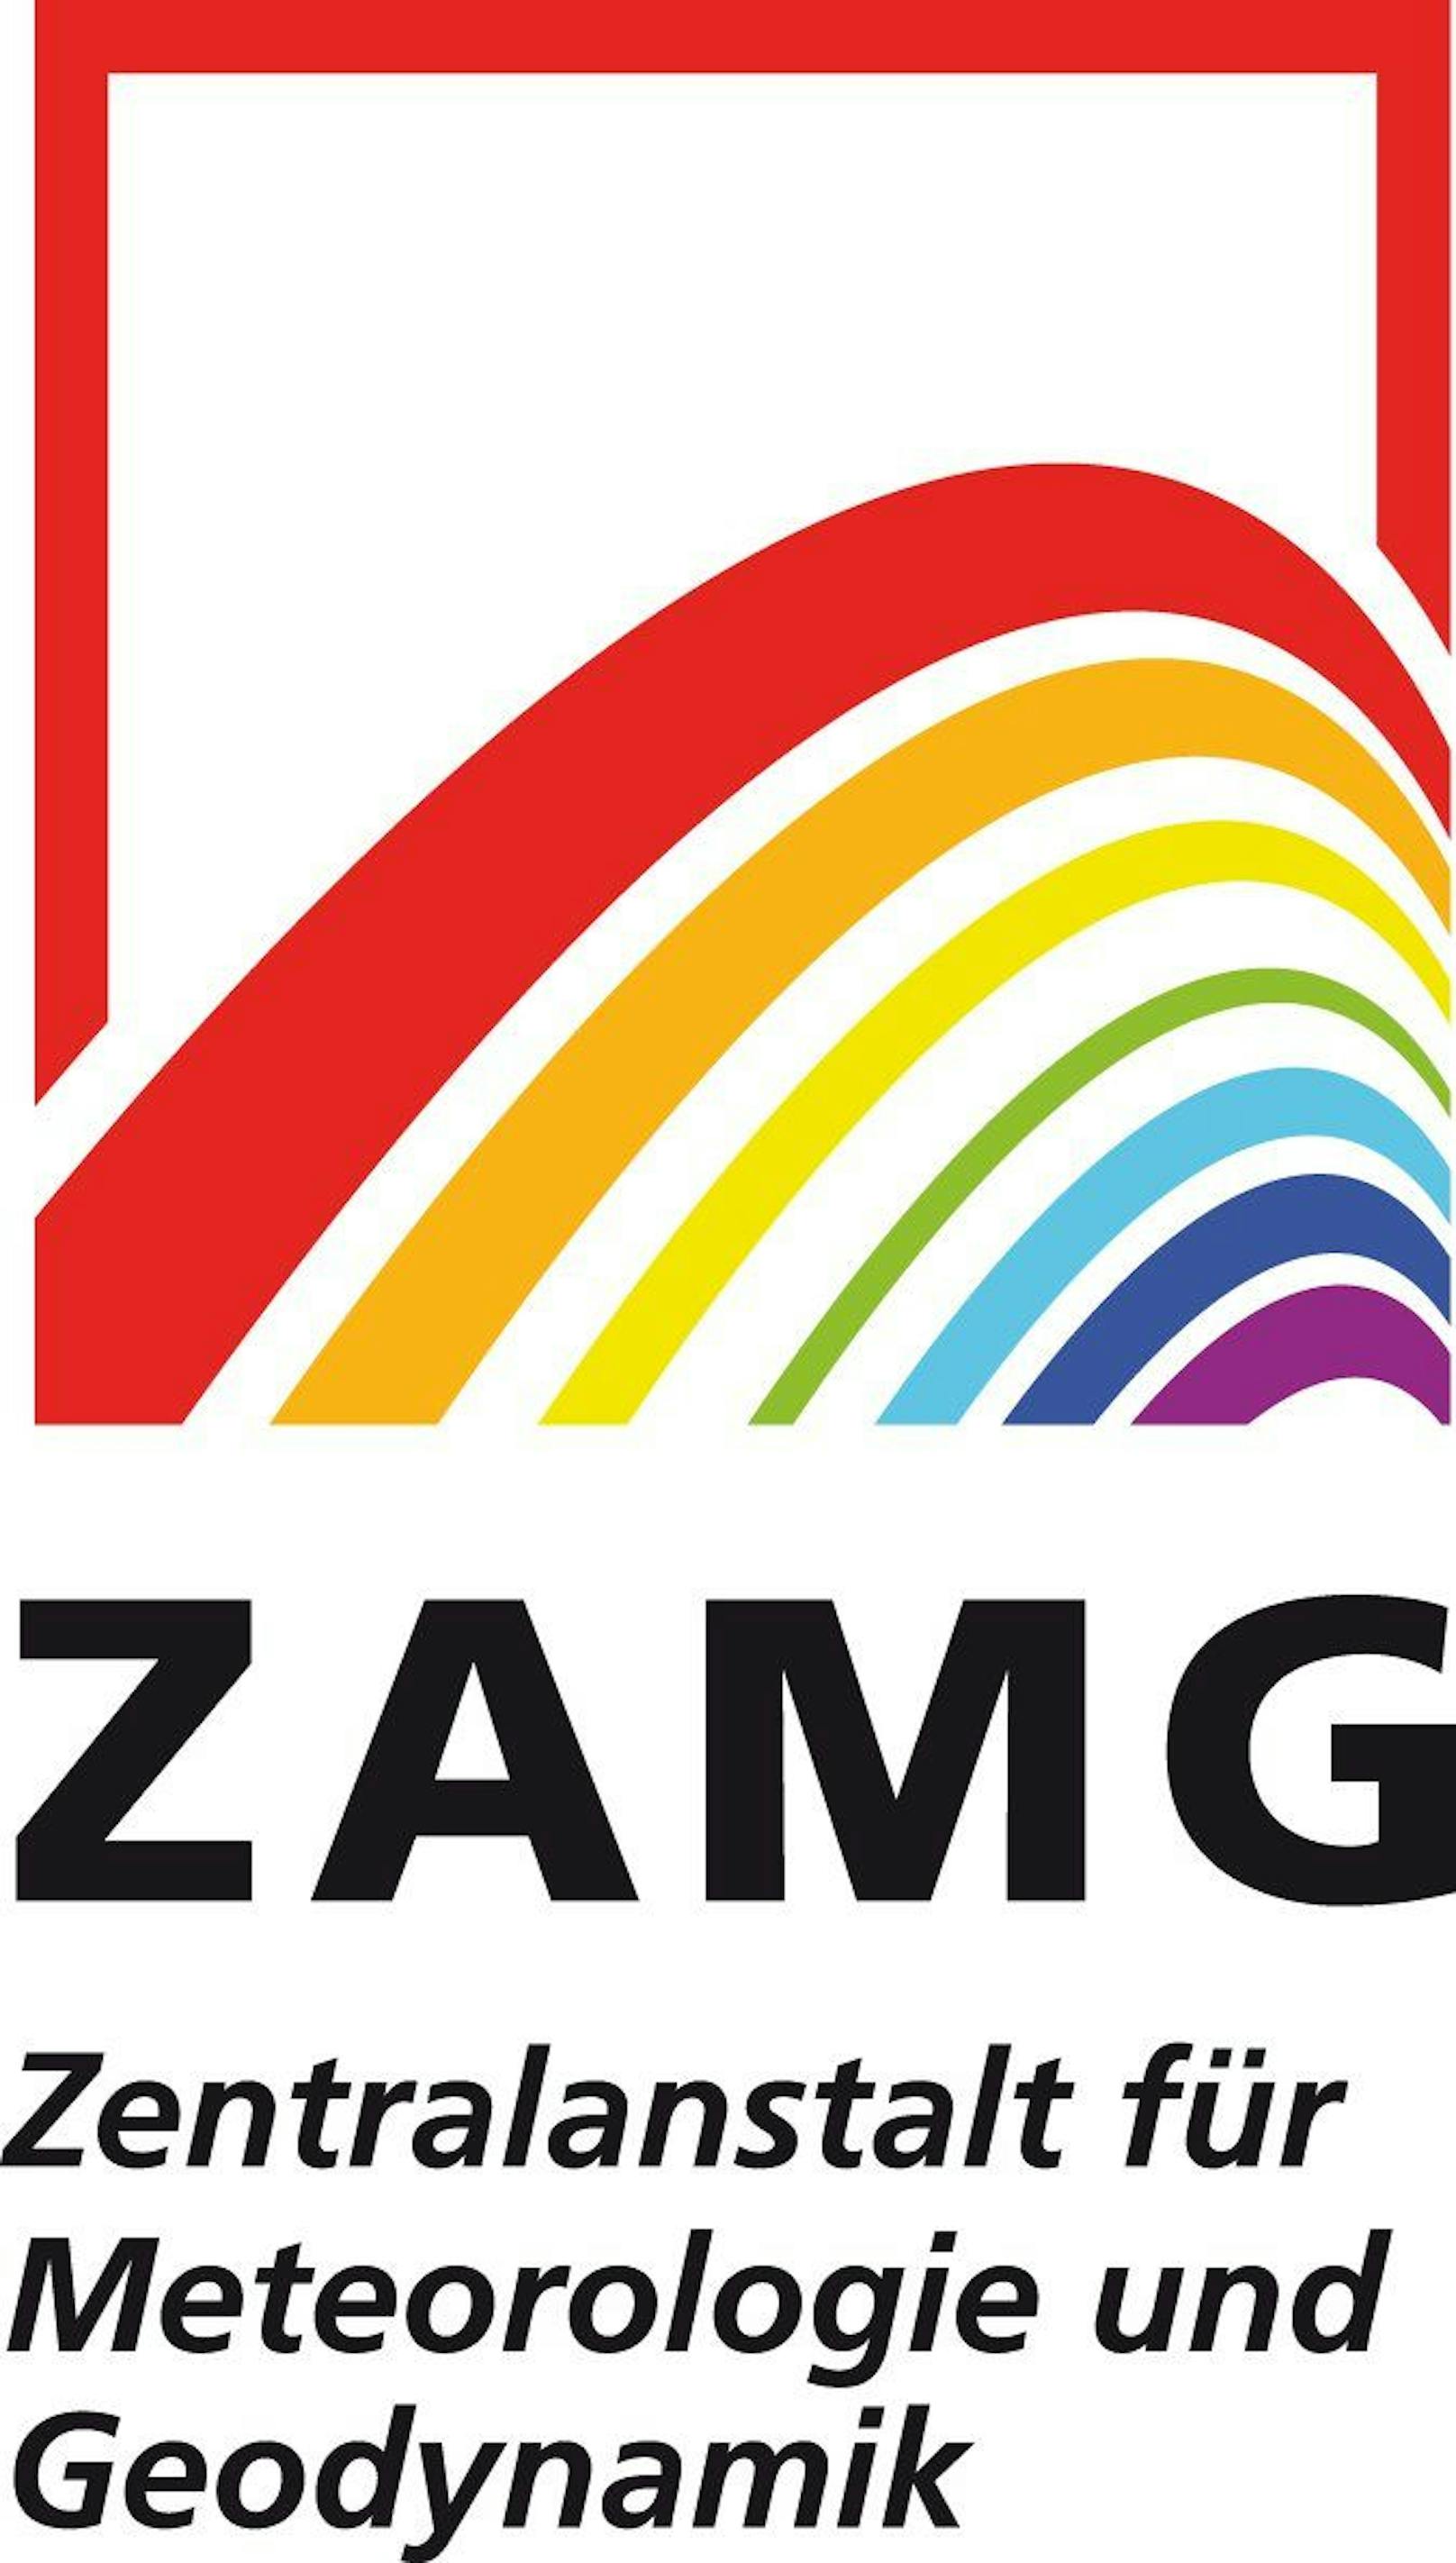 Das frühere Logo der ZAMG. Seit dem 1. Jänner 2023 ist es Geschichte. <a target="_blank" data-li-document-ref="100244786" href="https://www.heute.at/g/wetter-100244786">Alle Infos hier &gt;&gt;</a>